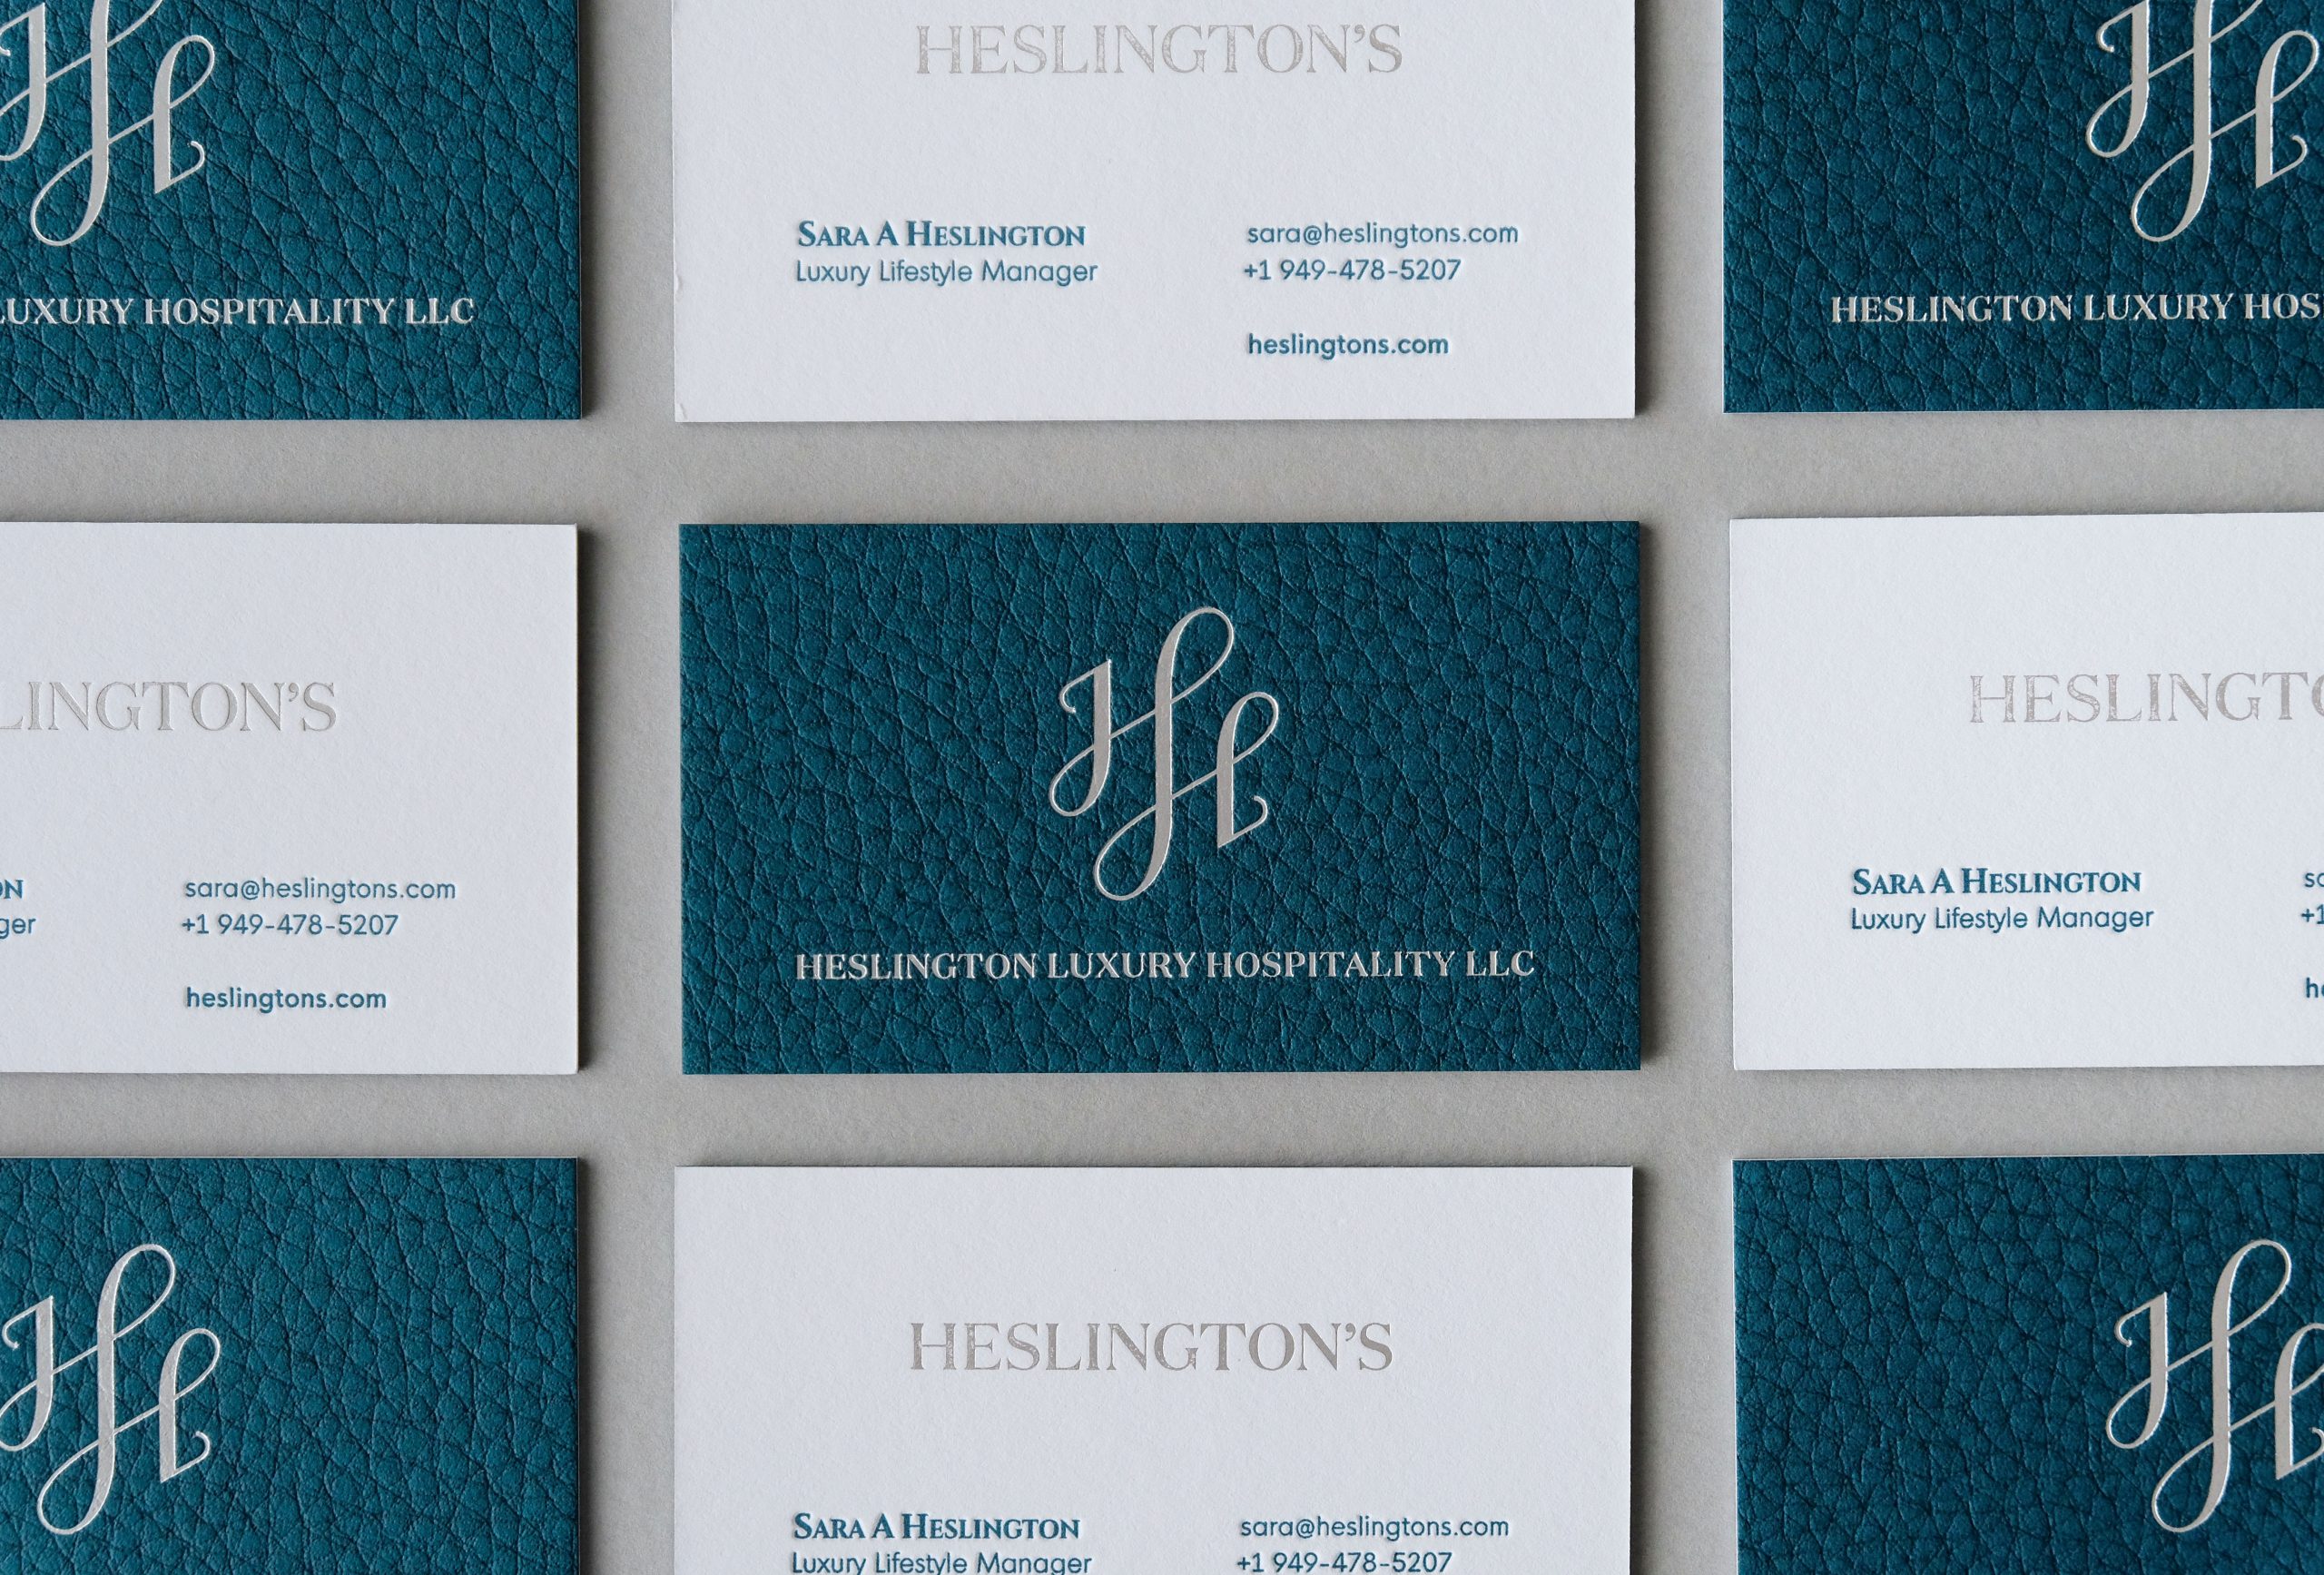 Heslington's Business Card Tiles